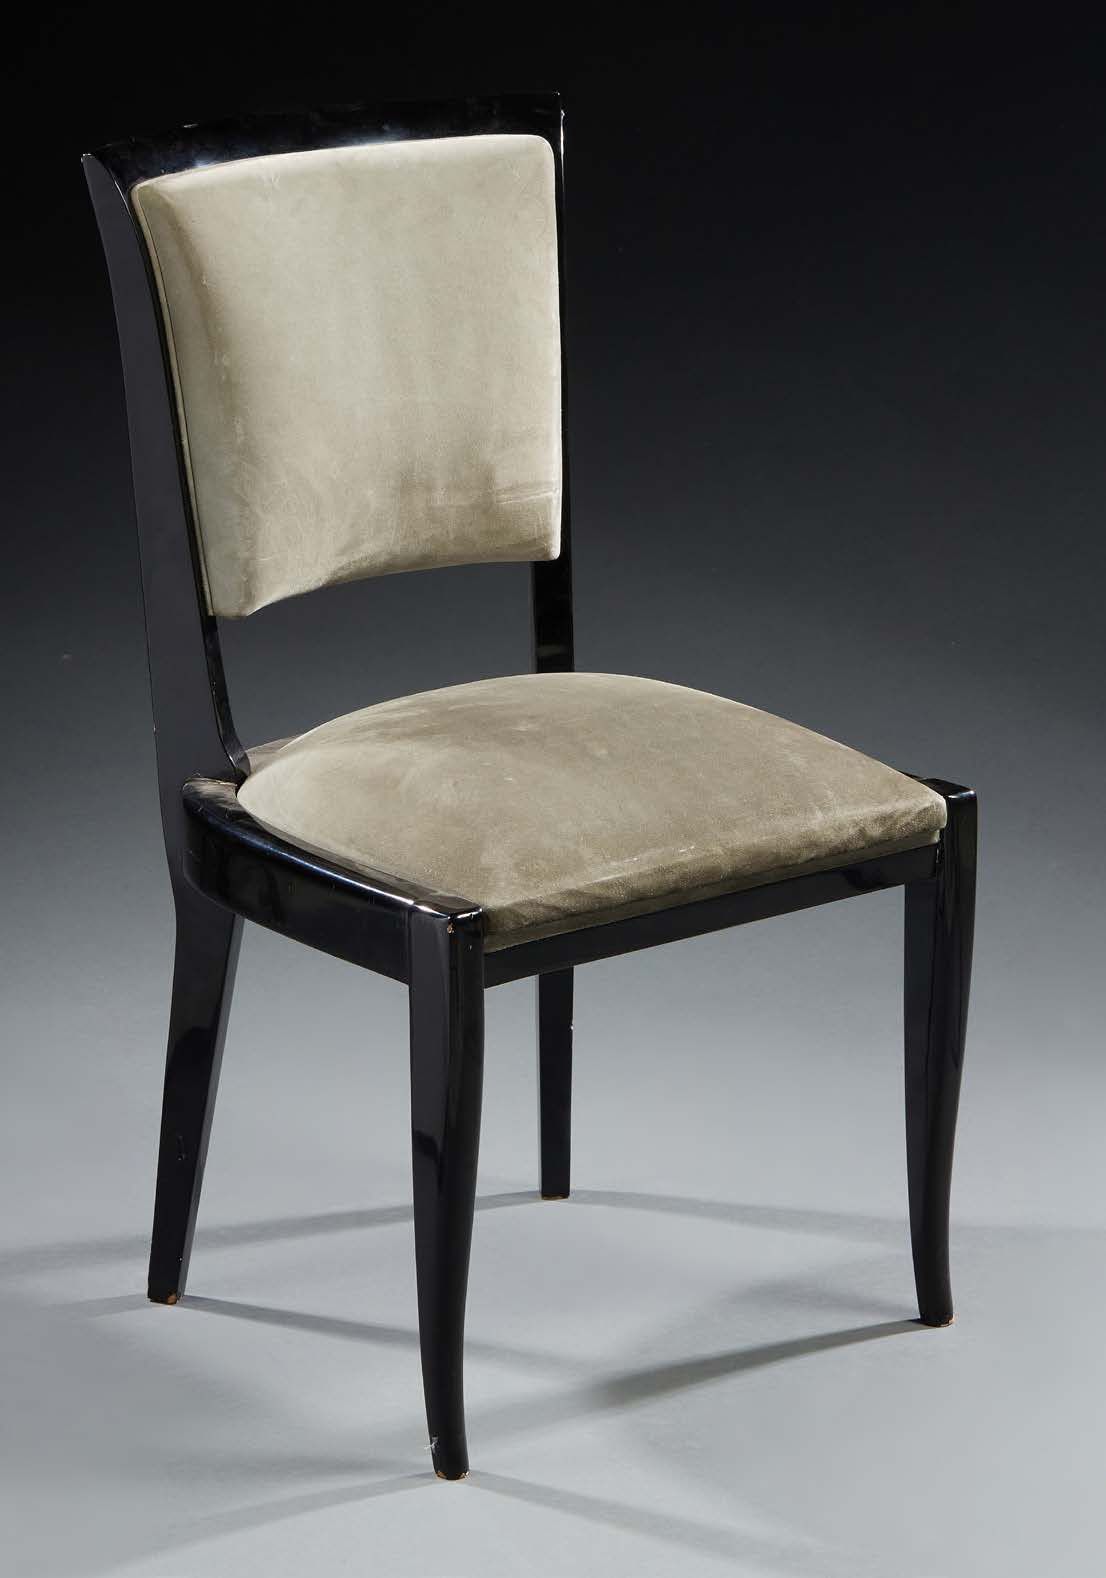 Travail français 1950 黑色漆面椅子，绿色天鹅绒座椅和椅背
高：86 宽：49 深：50 厘米